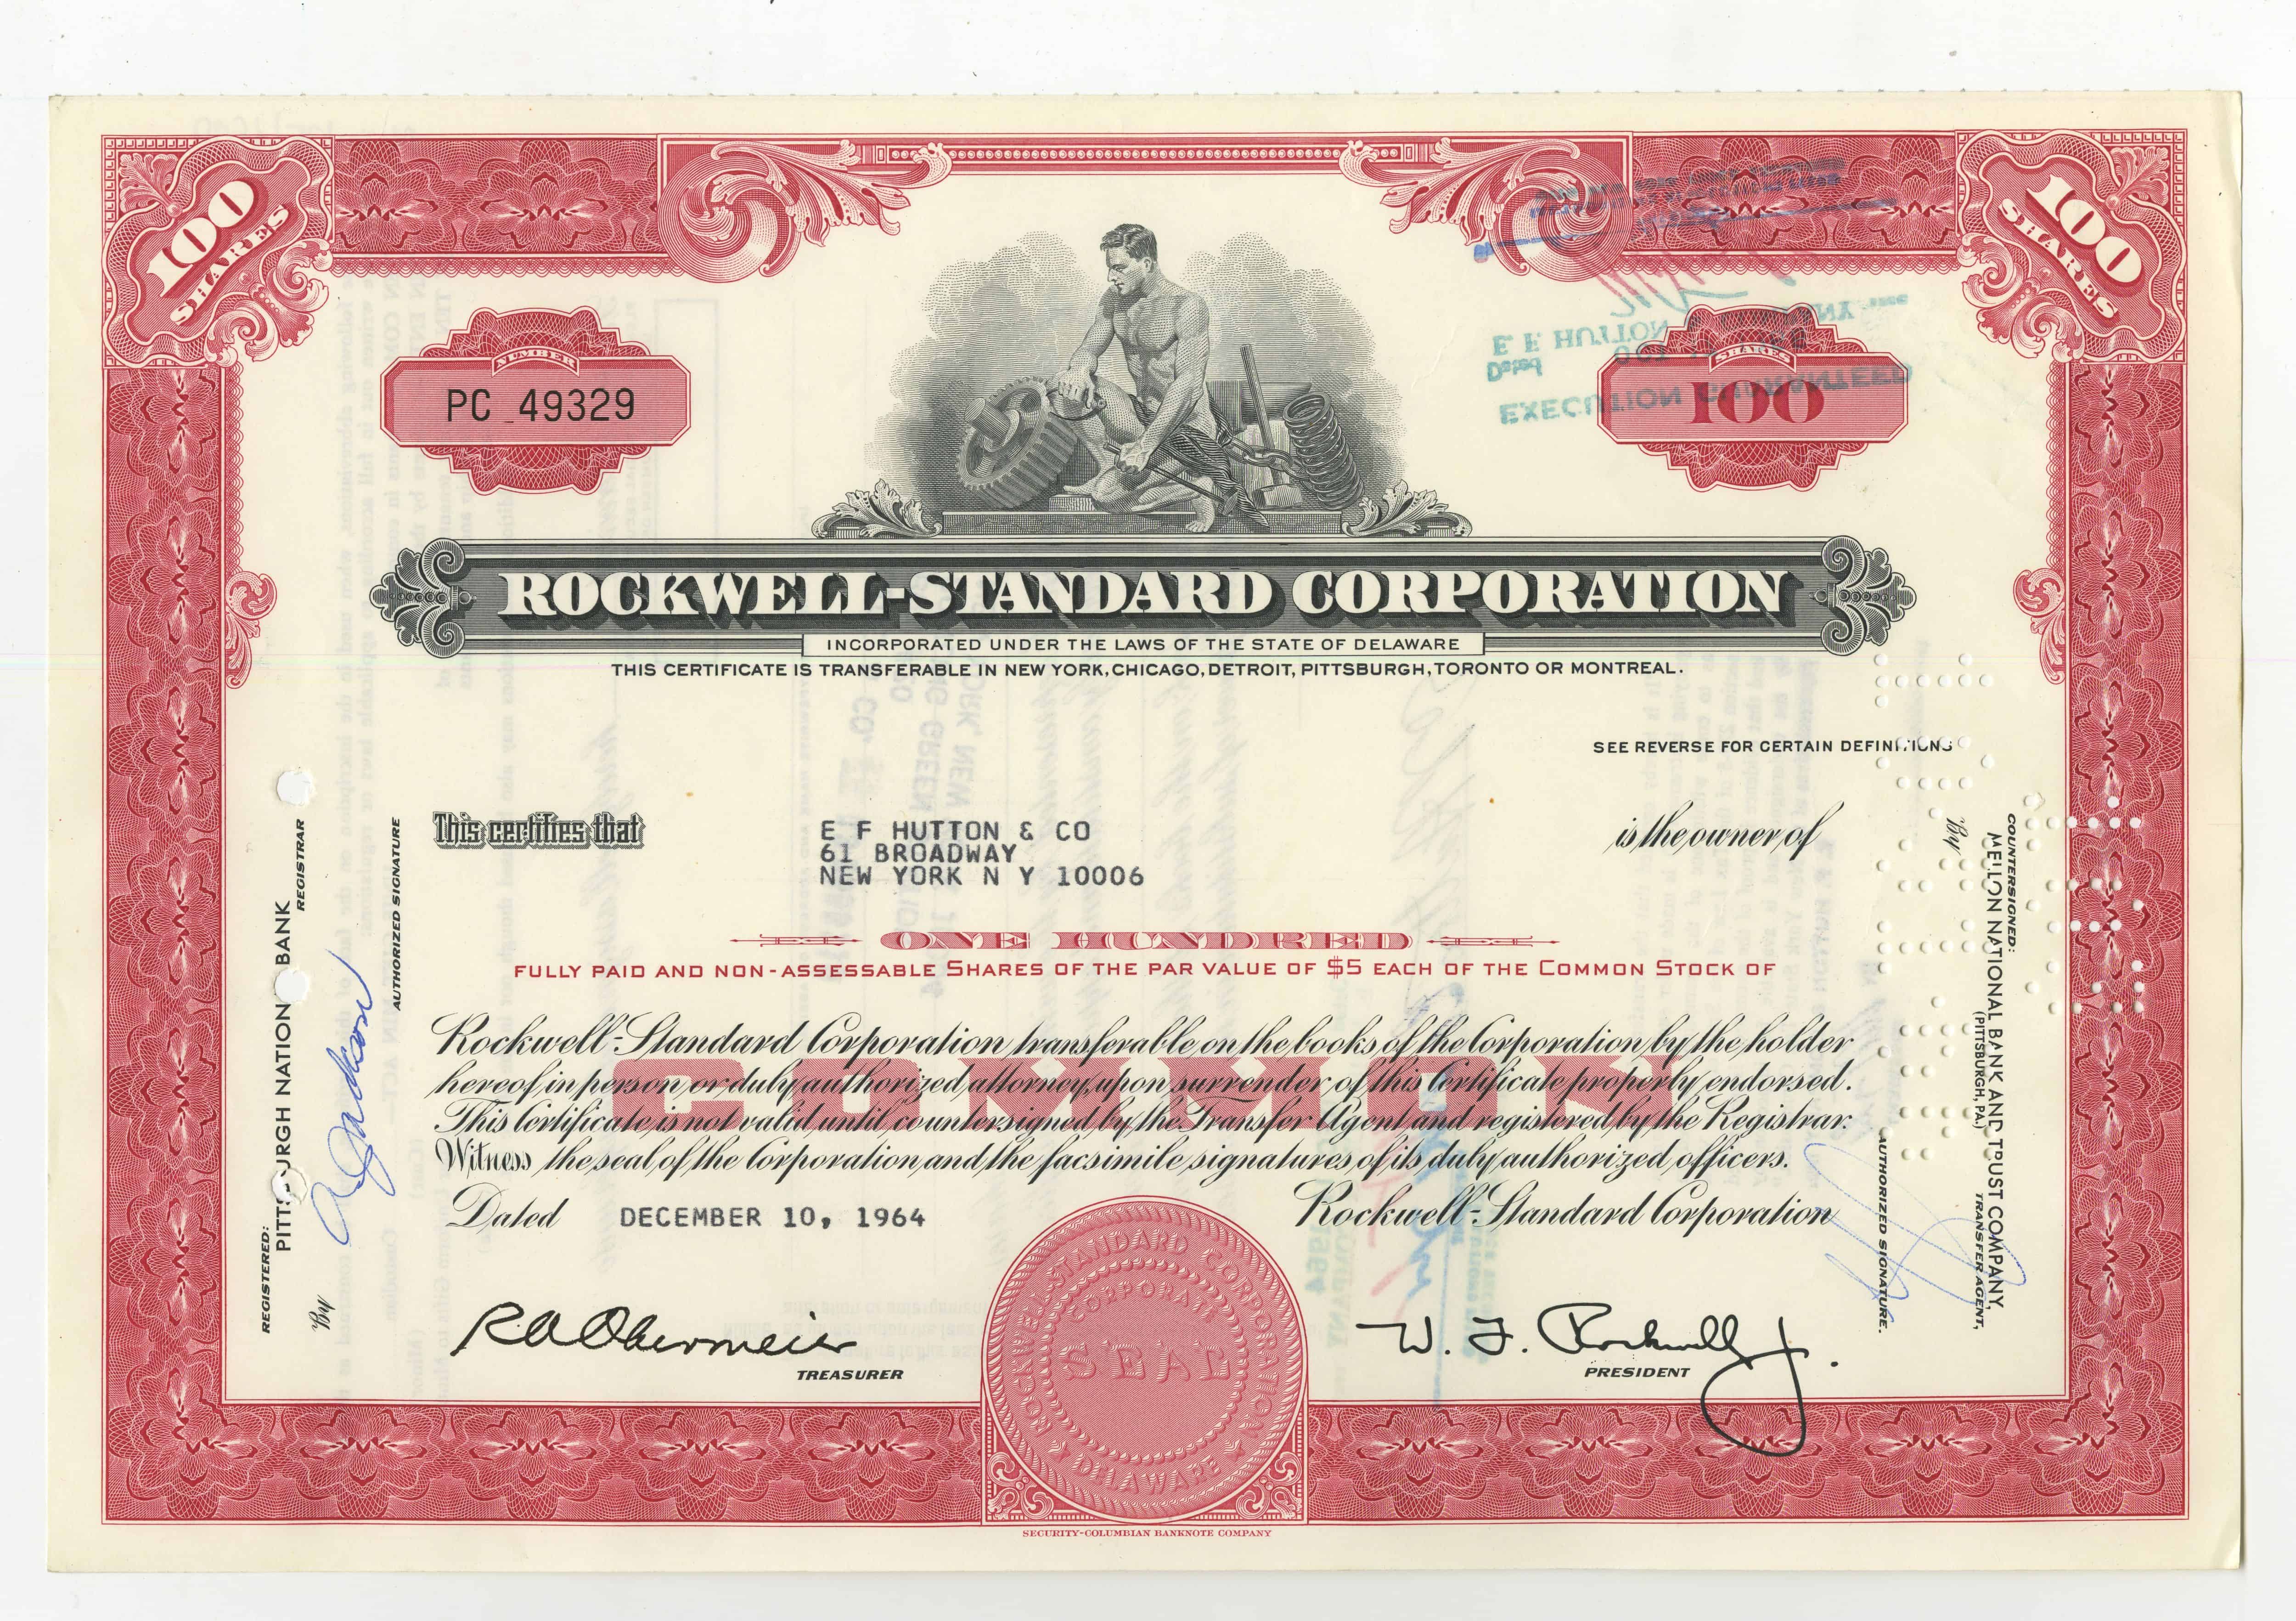 100 akcji spółki Rockwell - Standard Corporation z dnia 10 grudnia 1964 roku